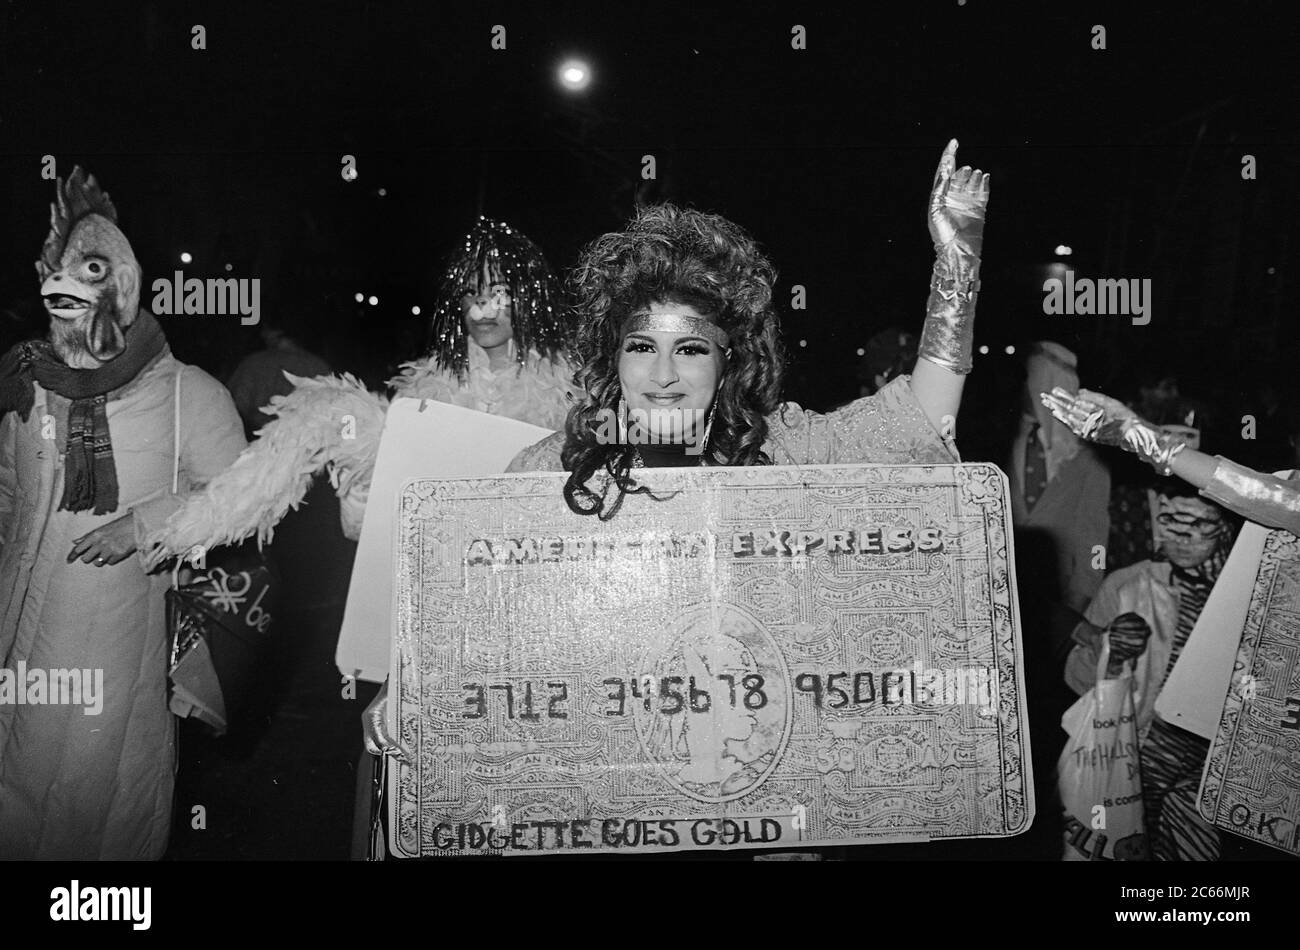 Gidgette al Greenwich Village Halloween Parade, New York City, USA negli anni '80 fotografato con film in bianco e nero di notte. Foto Stock